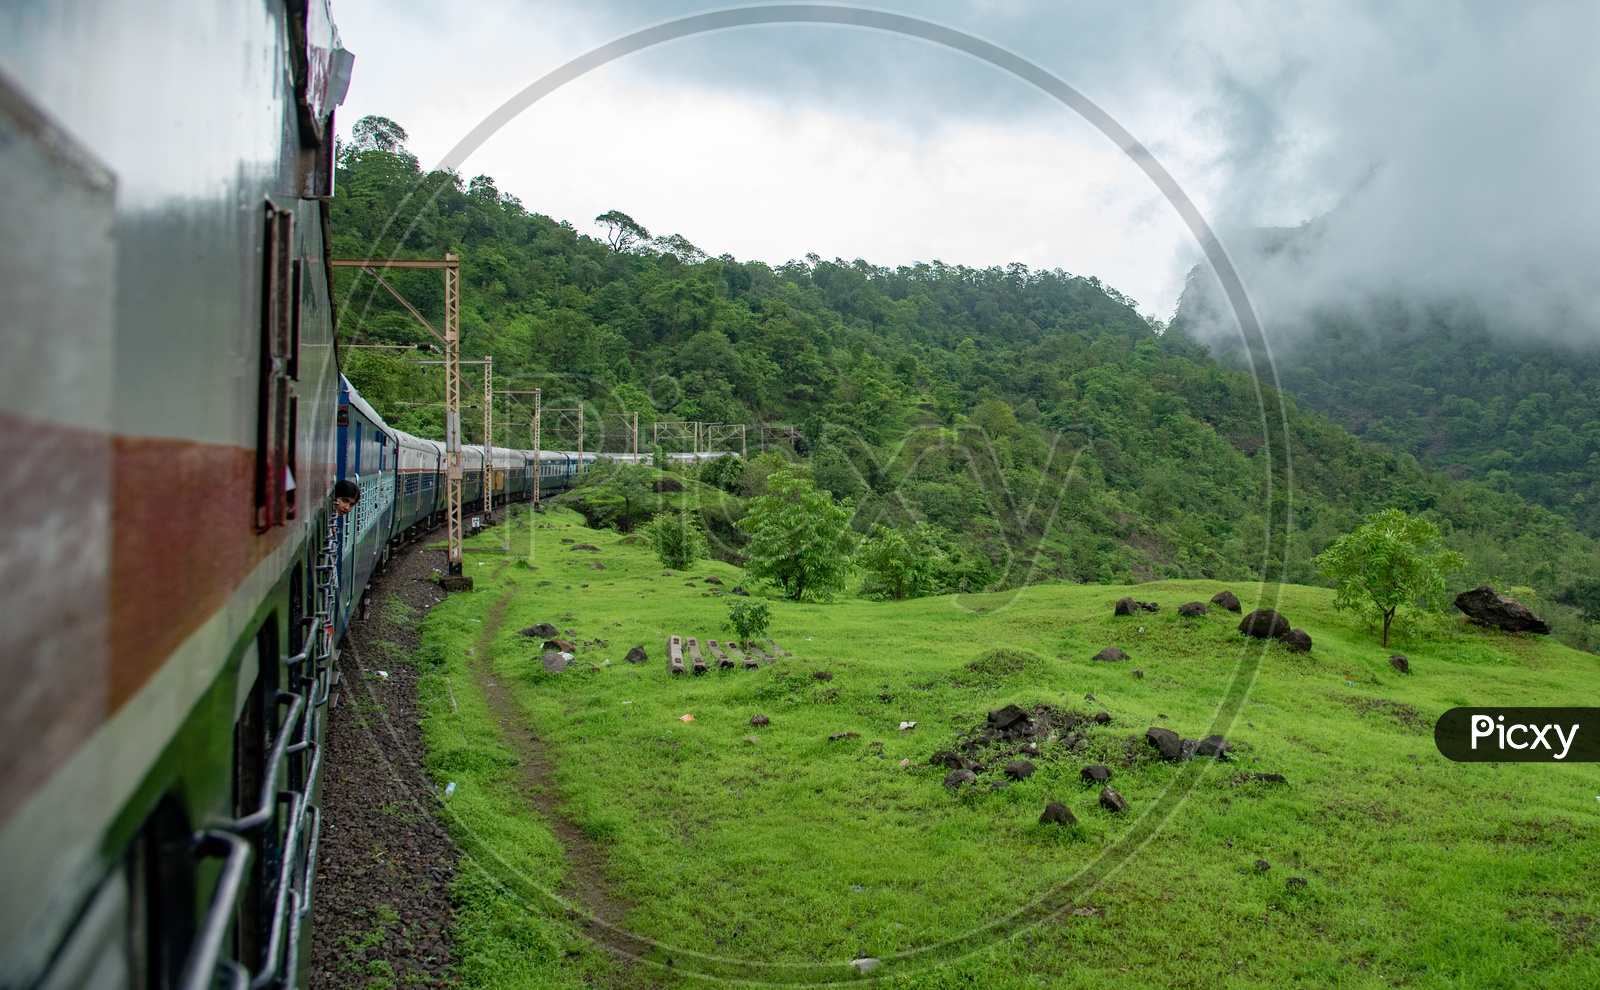 Scenic train journey from Lonavala to Mumbai